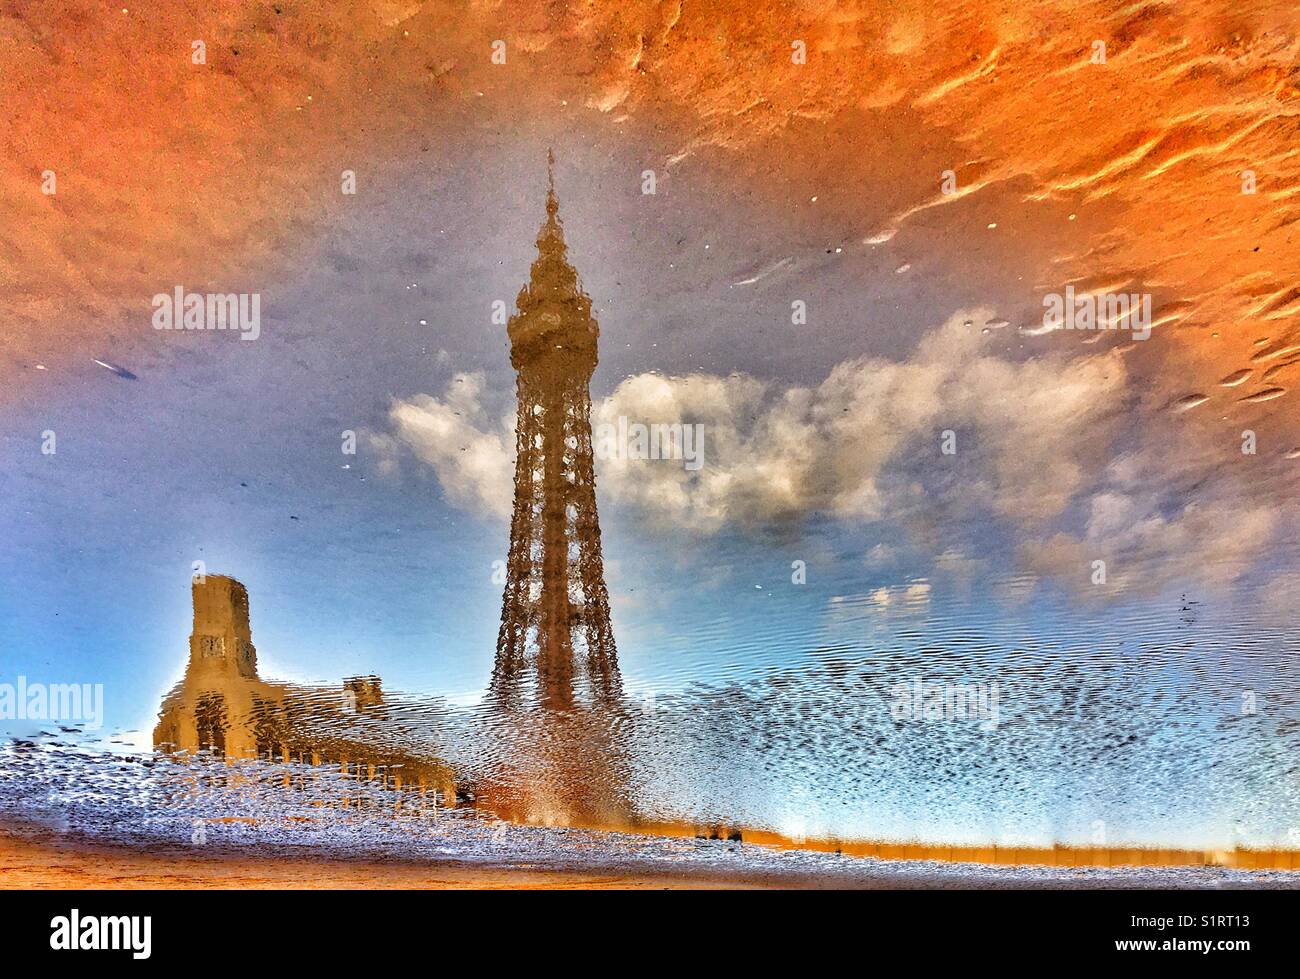 La tour de Blackpool reflète dans flaque d'eau sur la plage Banque D'Images